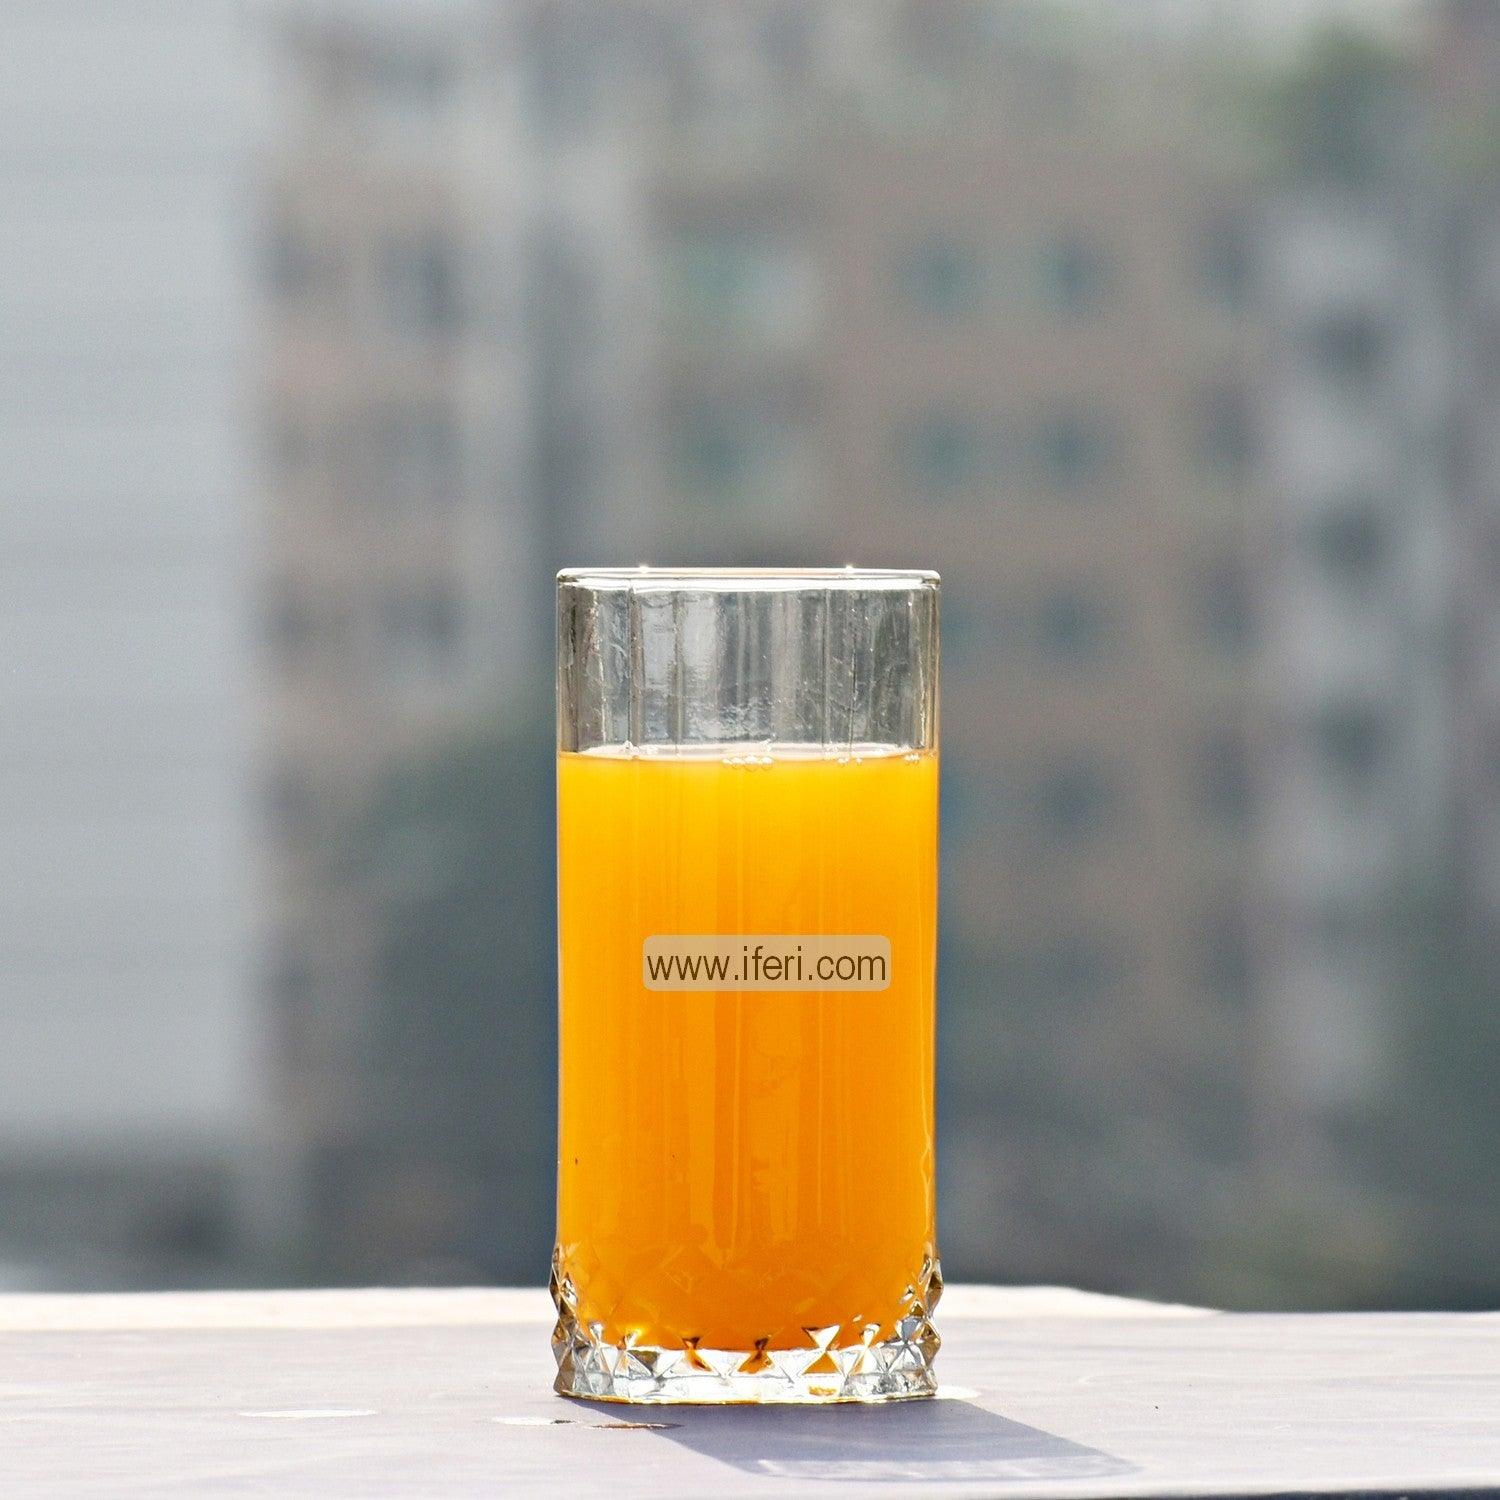 6 Pcs Water Juice Glass Set UT5501 Price in Bangladesh - iferi.com